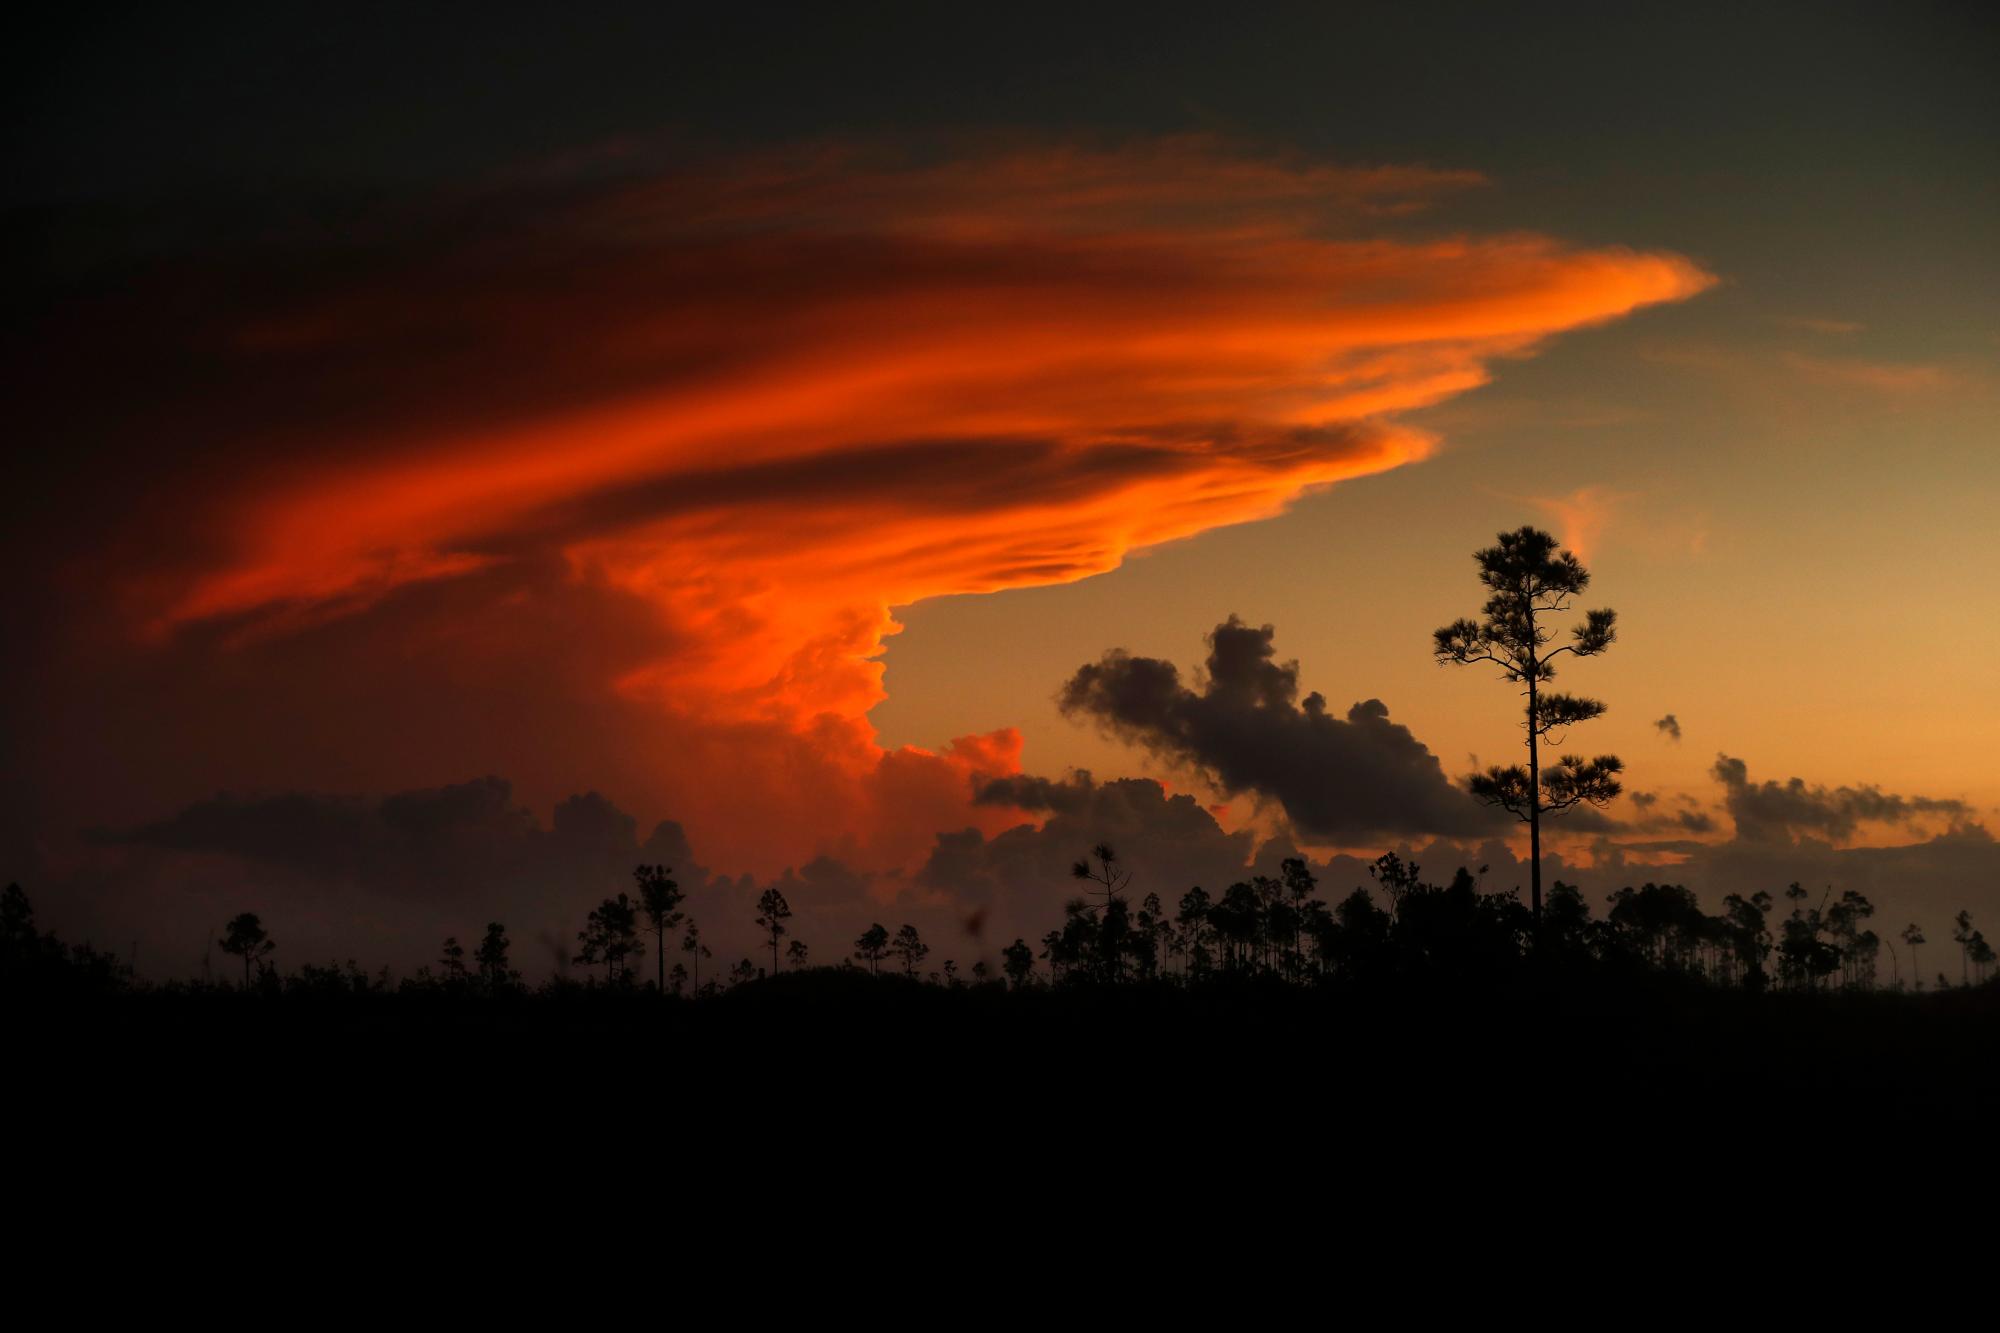 En esta foto del martes 22 de octubre de 2019, los primeros rayos de luz solar colorean las nubes sobre el Parque Nacional Everglades, cerca de Flamingo, Florida. El parque recibe casi 60 pulgadas de lluvia al año. “Aquí no hay picos elevados que buscan el cielo, ni poderosos glaciares ni corrientes que desgasten la tierra elevada”, dijo el presidente Harry S. Truman en un discurso del 6 de diciembre de 1947 dedicado al Parque Nacional Everglades. “Aquí hay tierra, tranquila en su tranquila belleza, que sirve no como fuente de agua, sino como el último receptor de la misma. A su abundancia natural le debemos la espectacular vida vegetal y animal que distingue a este lugar de todos los demás en nuestro país. “